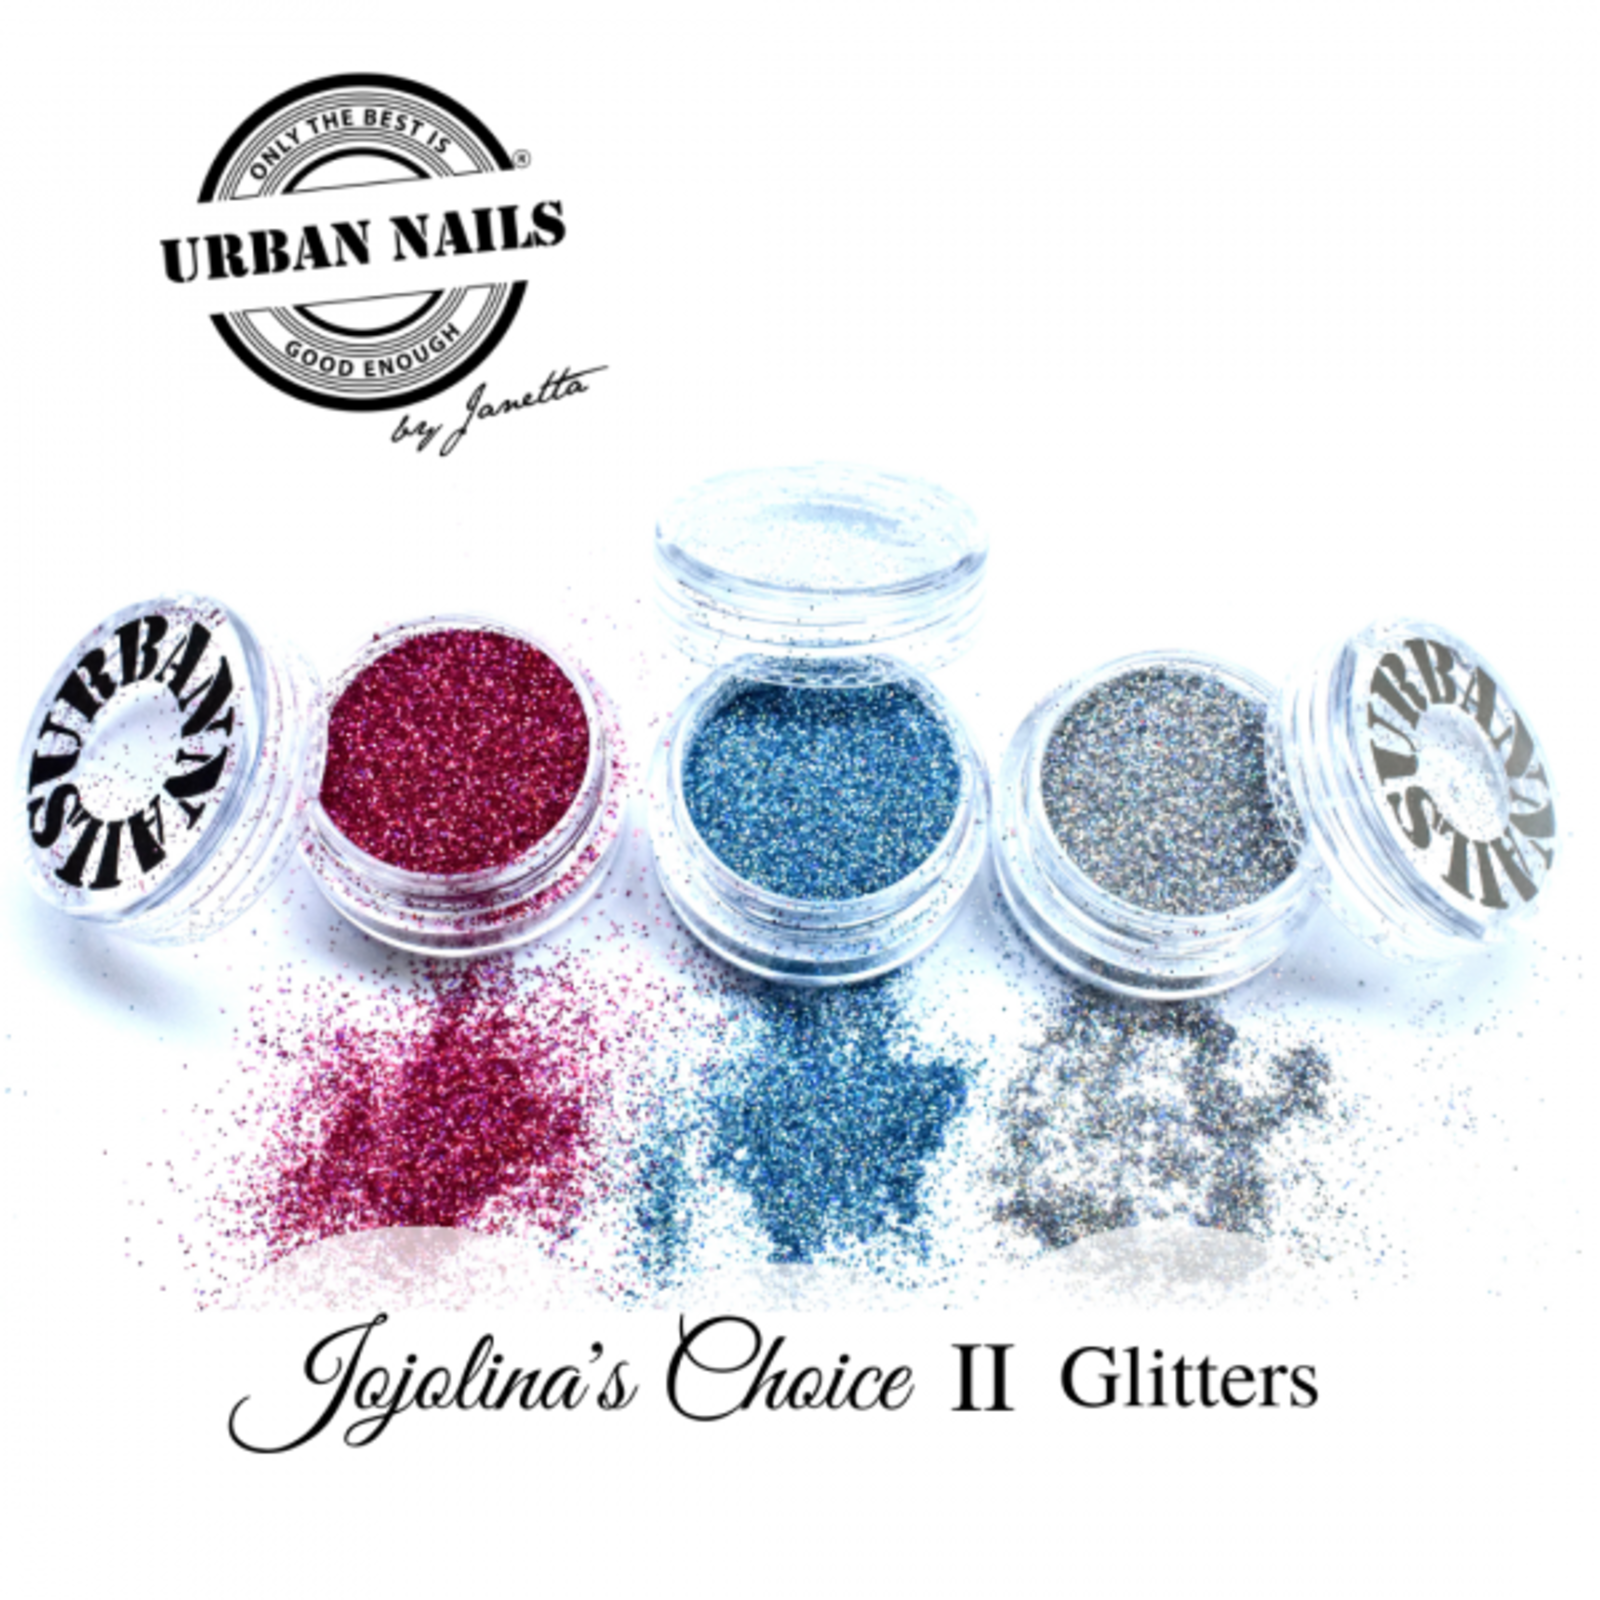 Urban nails Jojolina's  choice Glitters ||